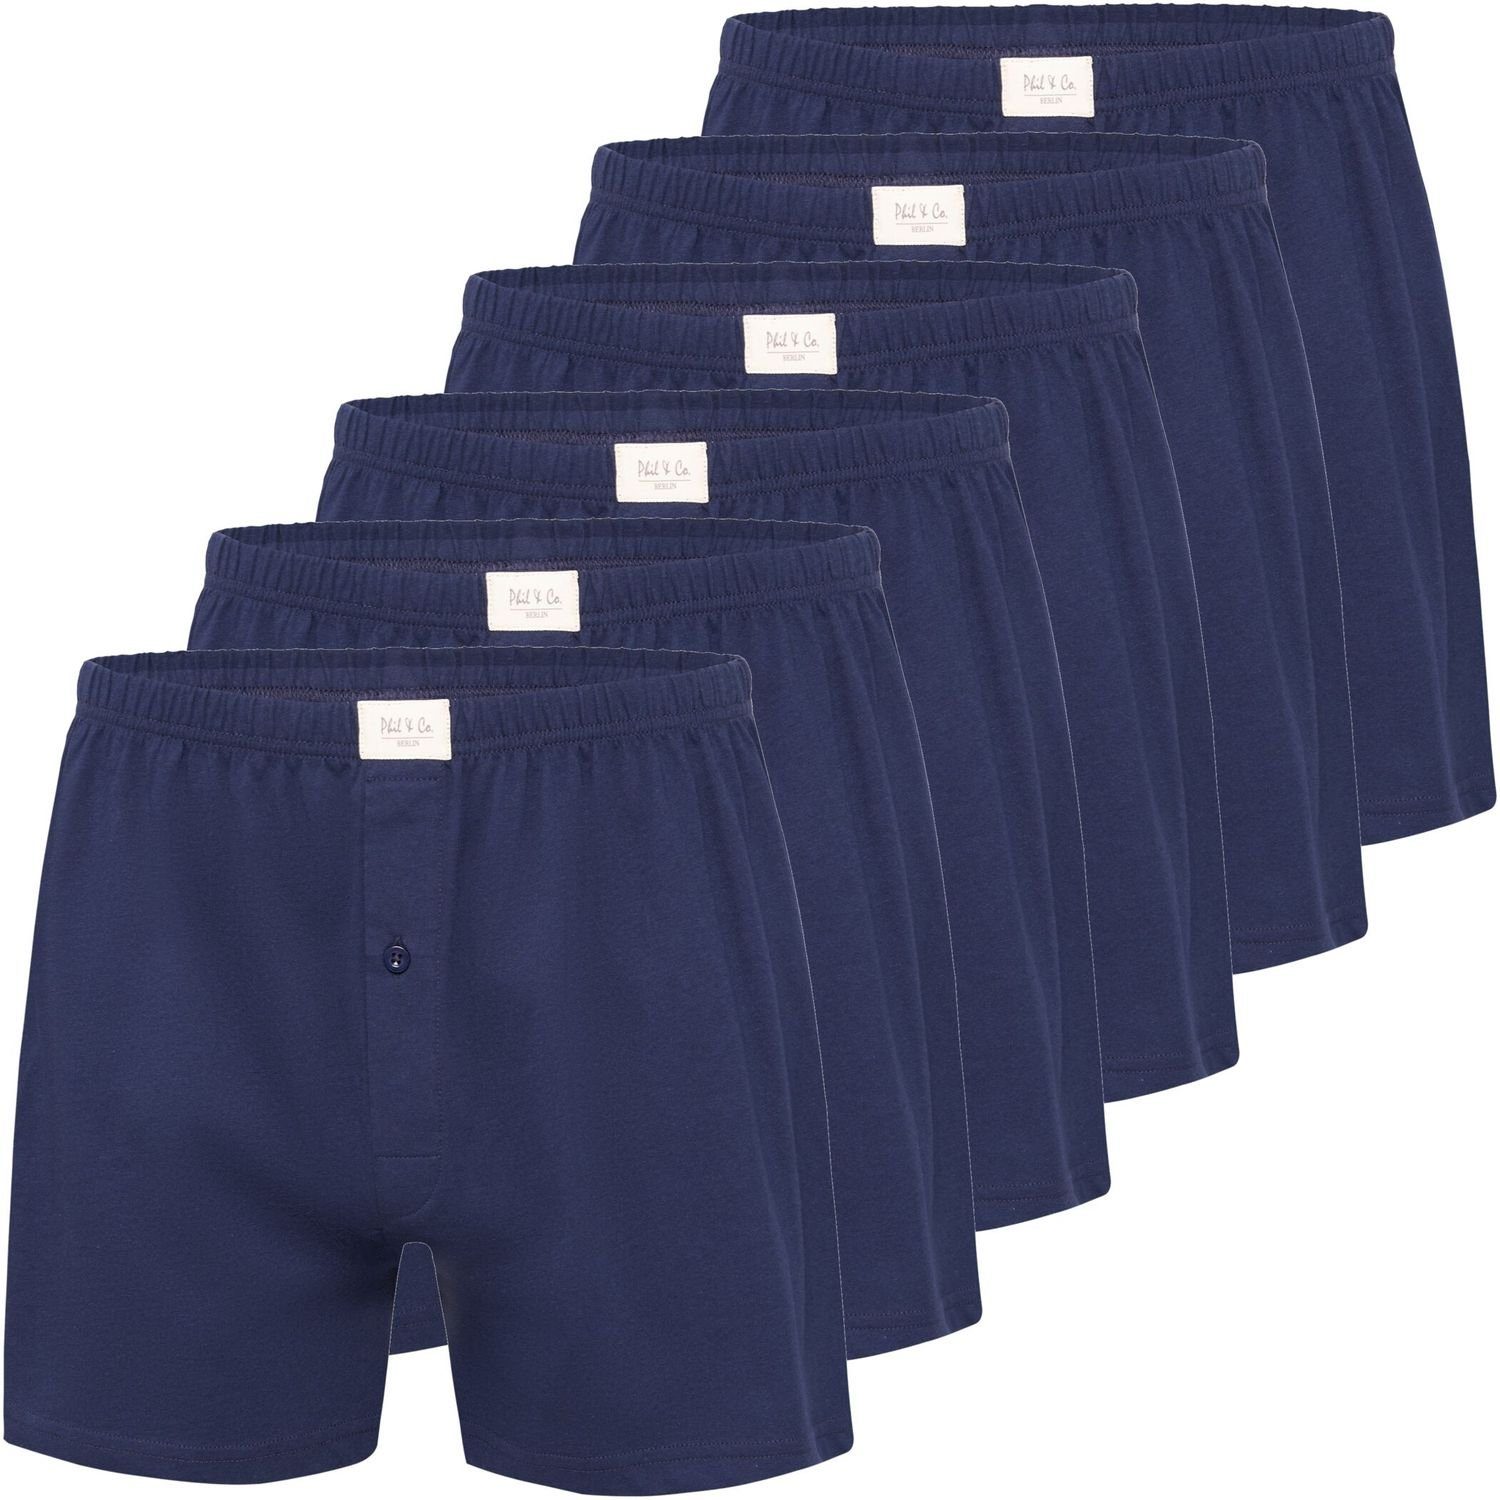 Phil & Co. Boxershorts 6 Stück Phil & Co Jersey Shorts Boxershorts Pant Unterhosen Herren große Größen schwarz oder blau M - 5XL (6-St) marine